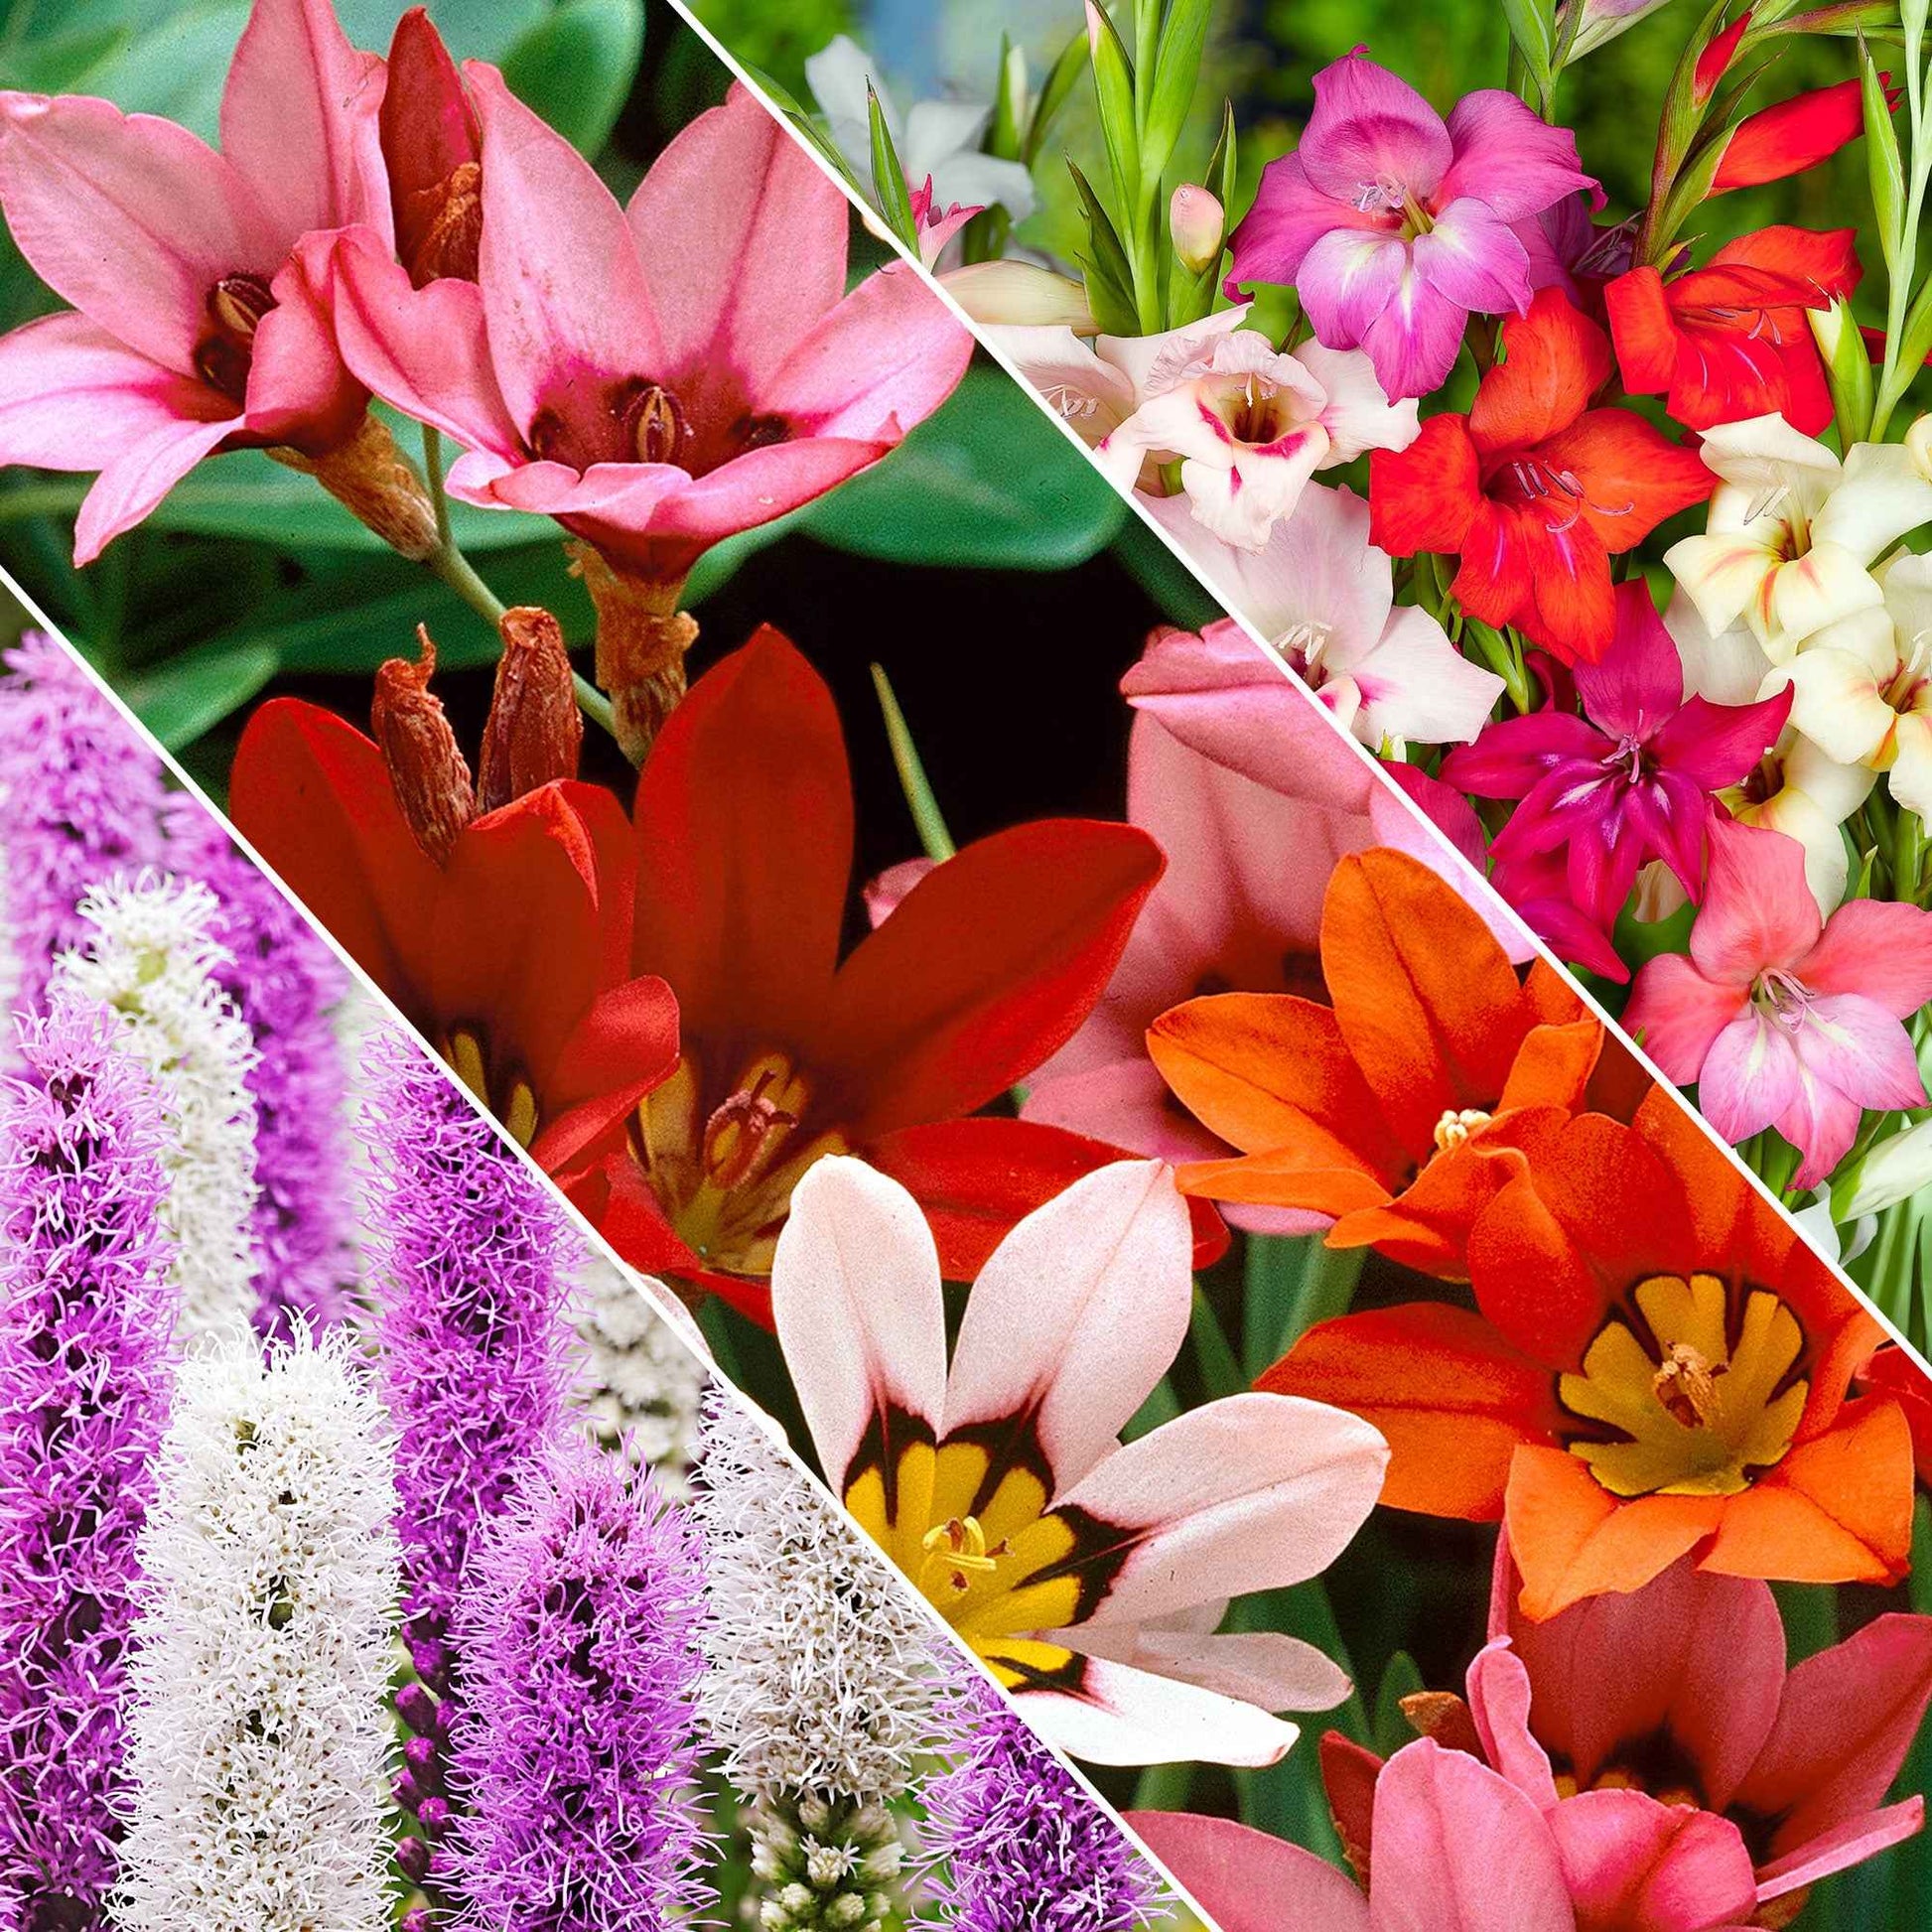 Blumenzwiebel Mischung 'For Bees & Butterflies' (x50) - Gladiolus nanus, sparaxis, liatris spicata - Blumenzwiebeln